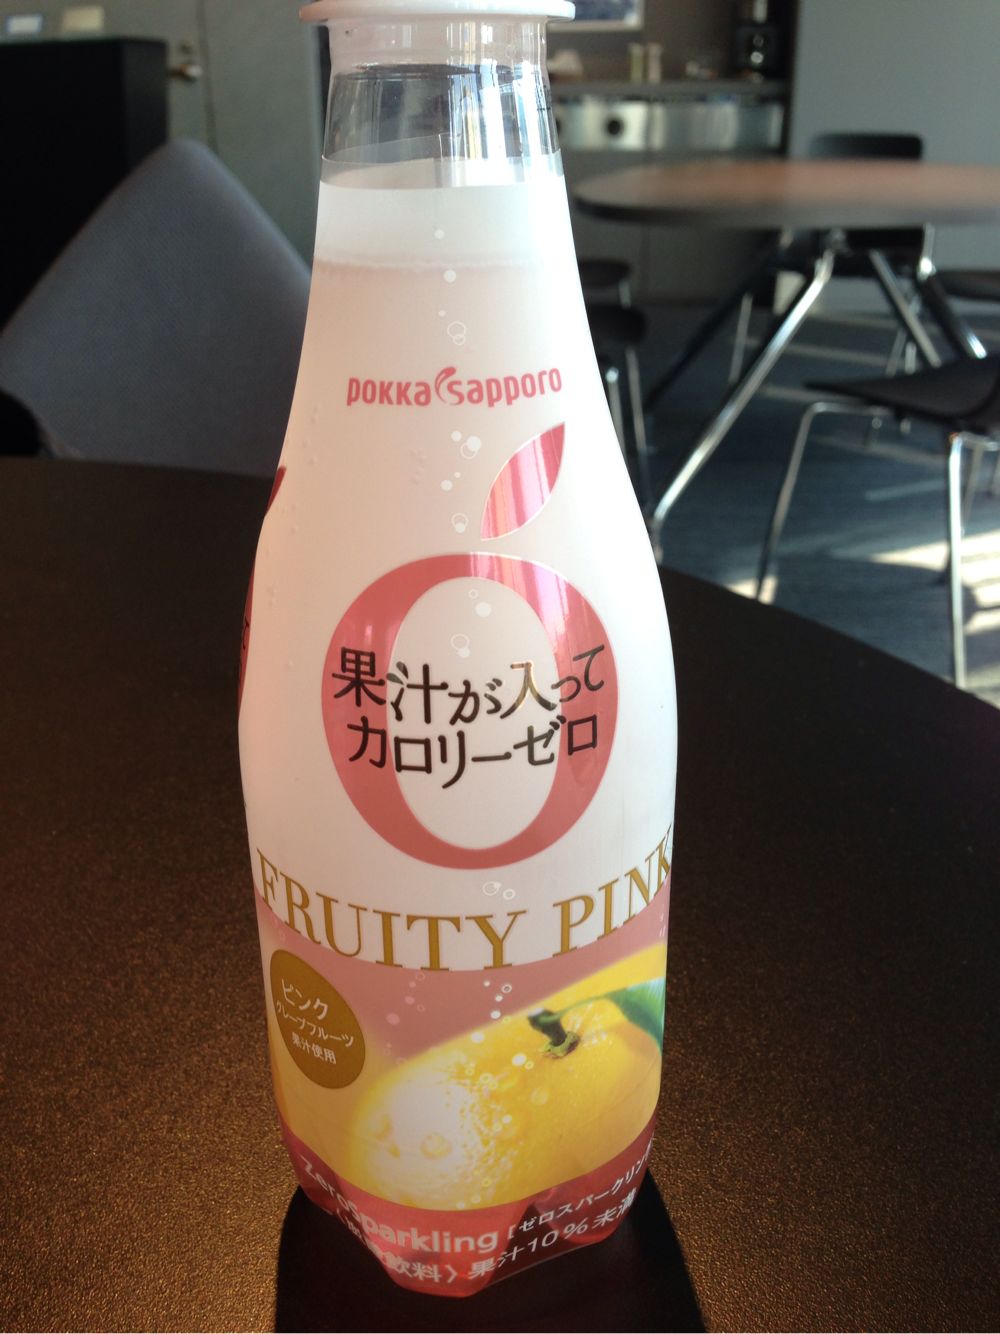 ドリンク評 143 Pokka Sapporo 果汁が入ってカロリーゼロ Fruity Pink 果汁入りで0calも衝撃なら味の良さも驚いた美味しすぎる炭酸飲料 明日やります